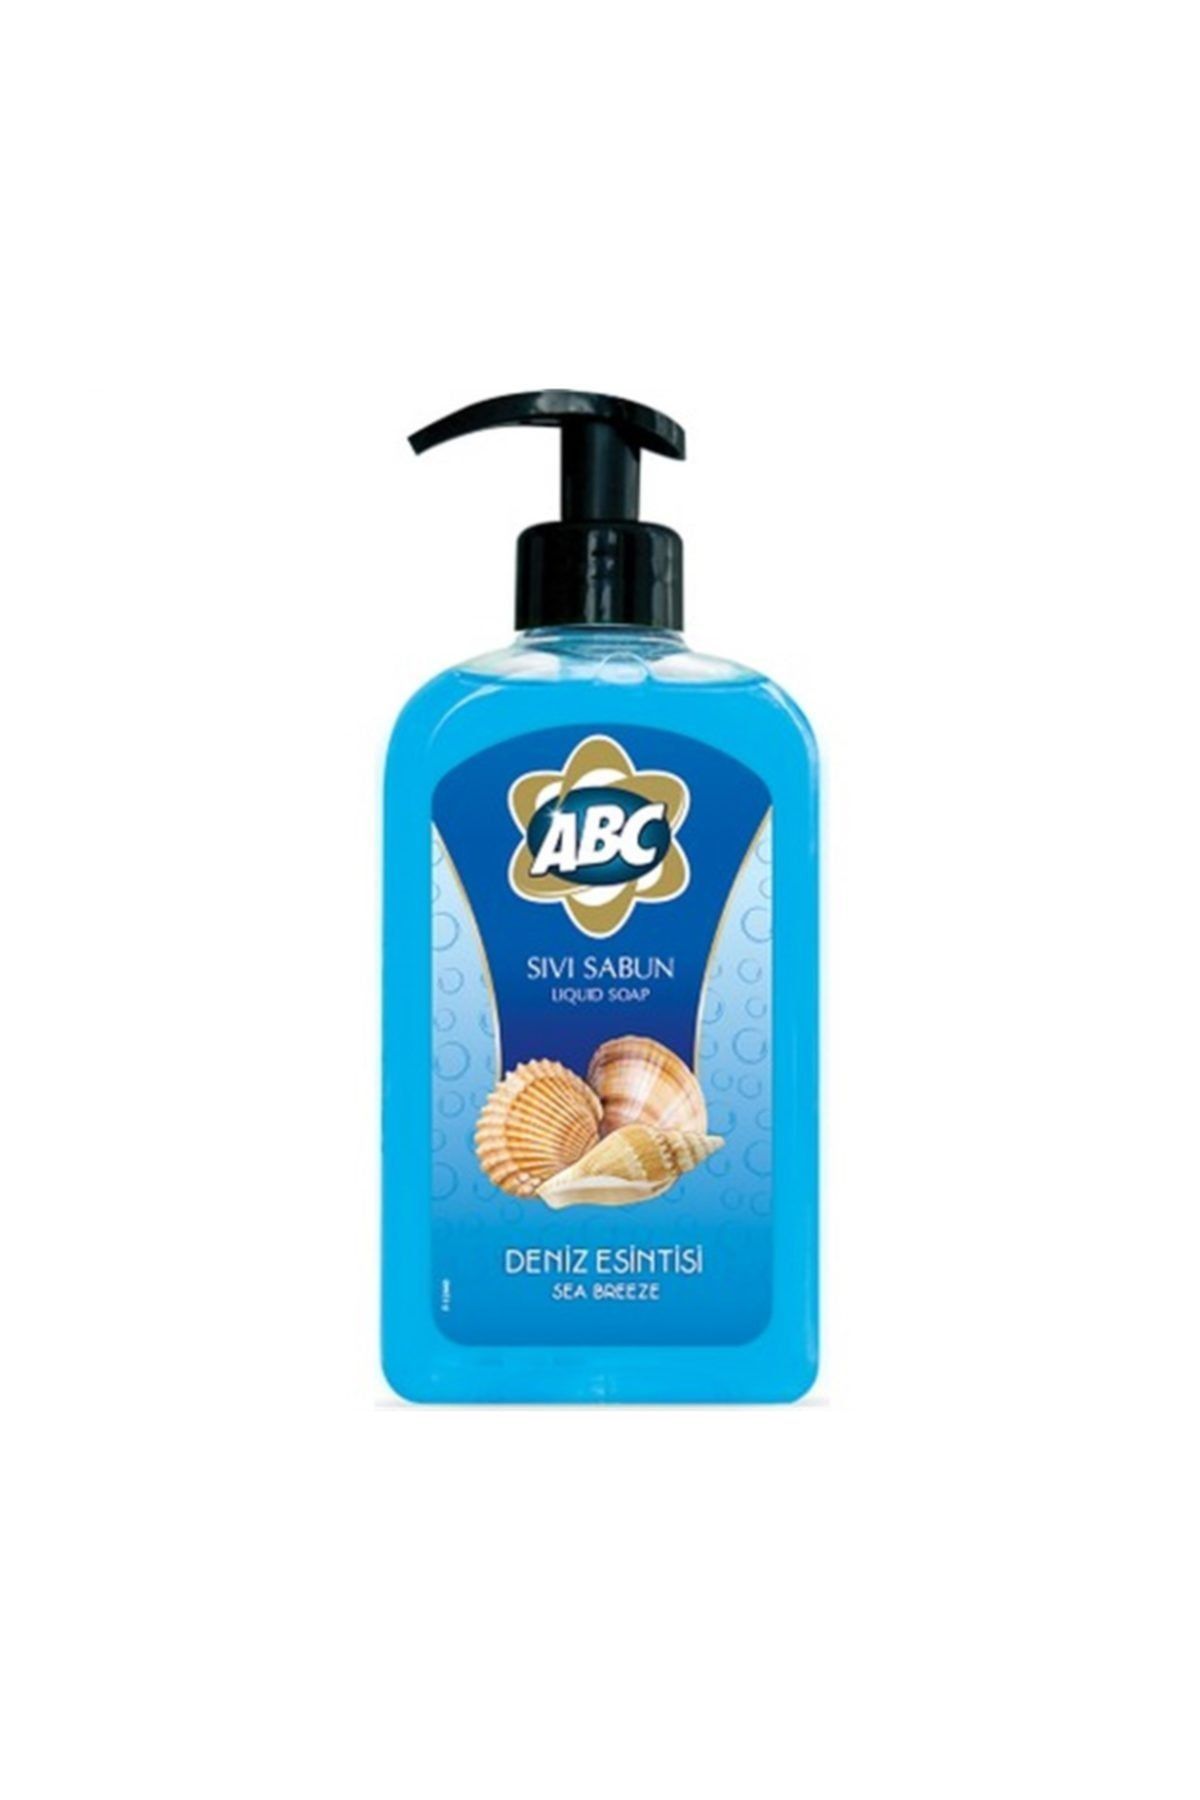 ABC Sıvı Sabun 500 Ml Deniz Esintisi